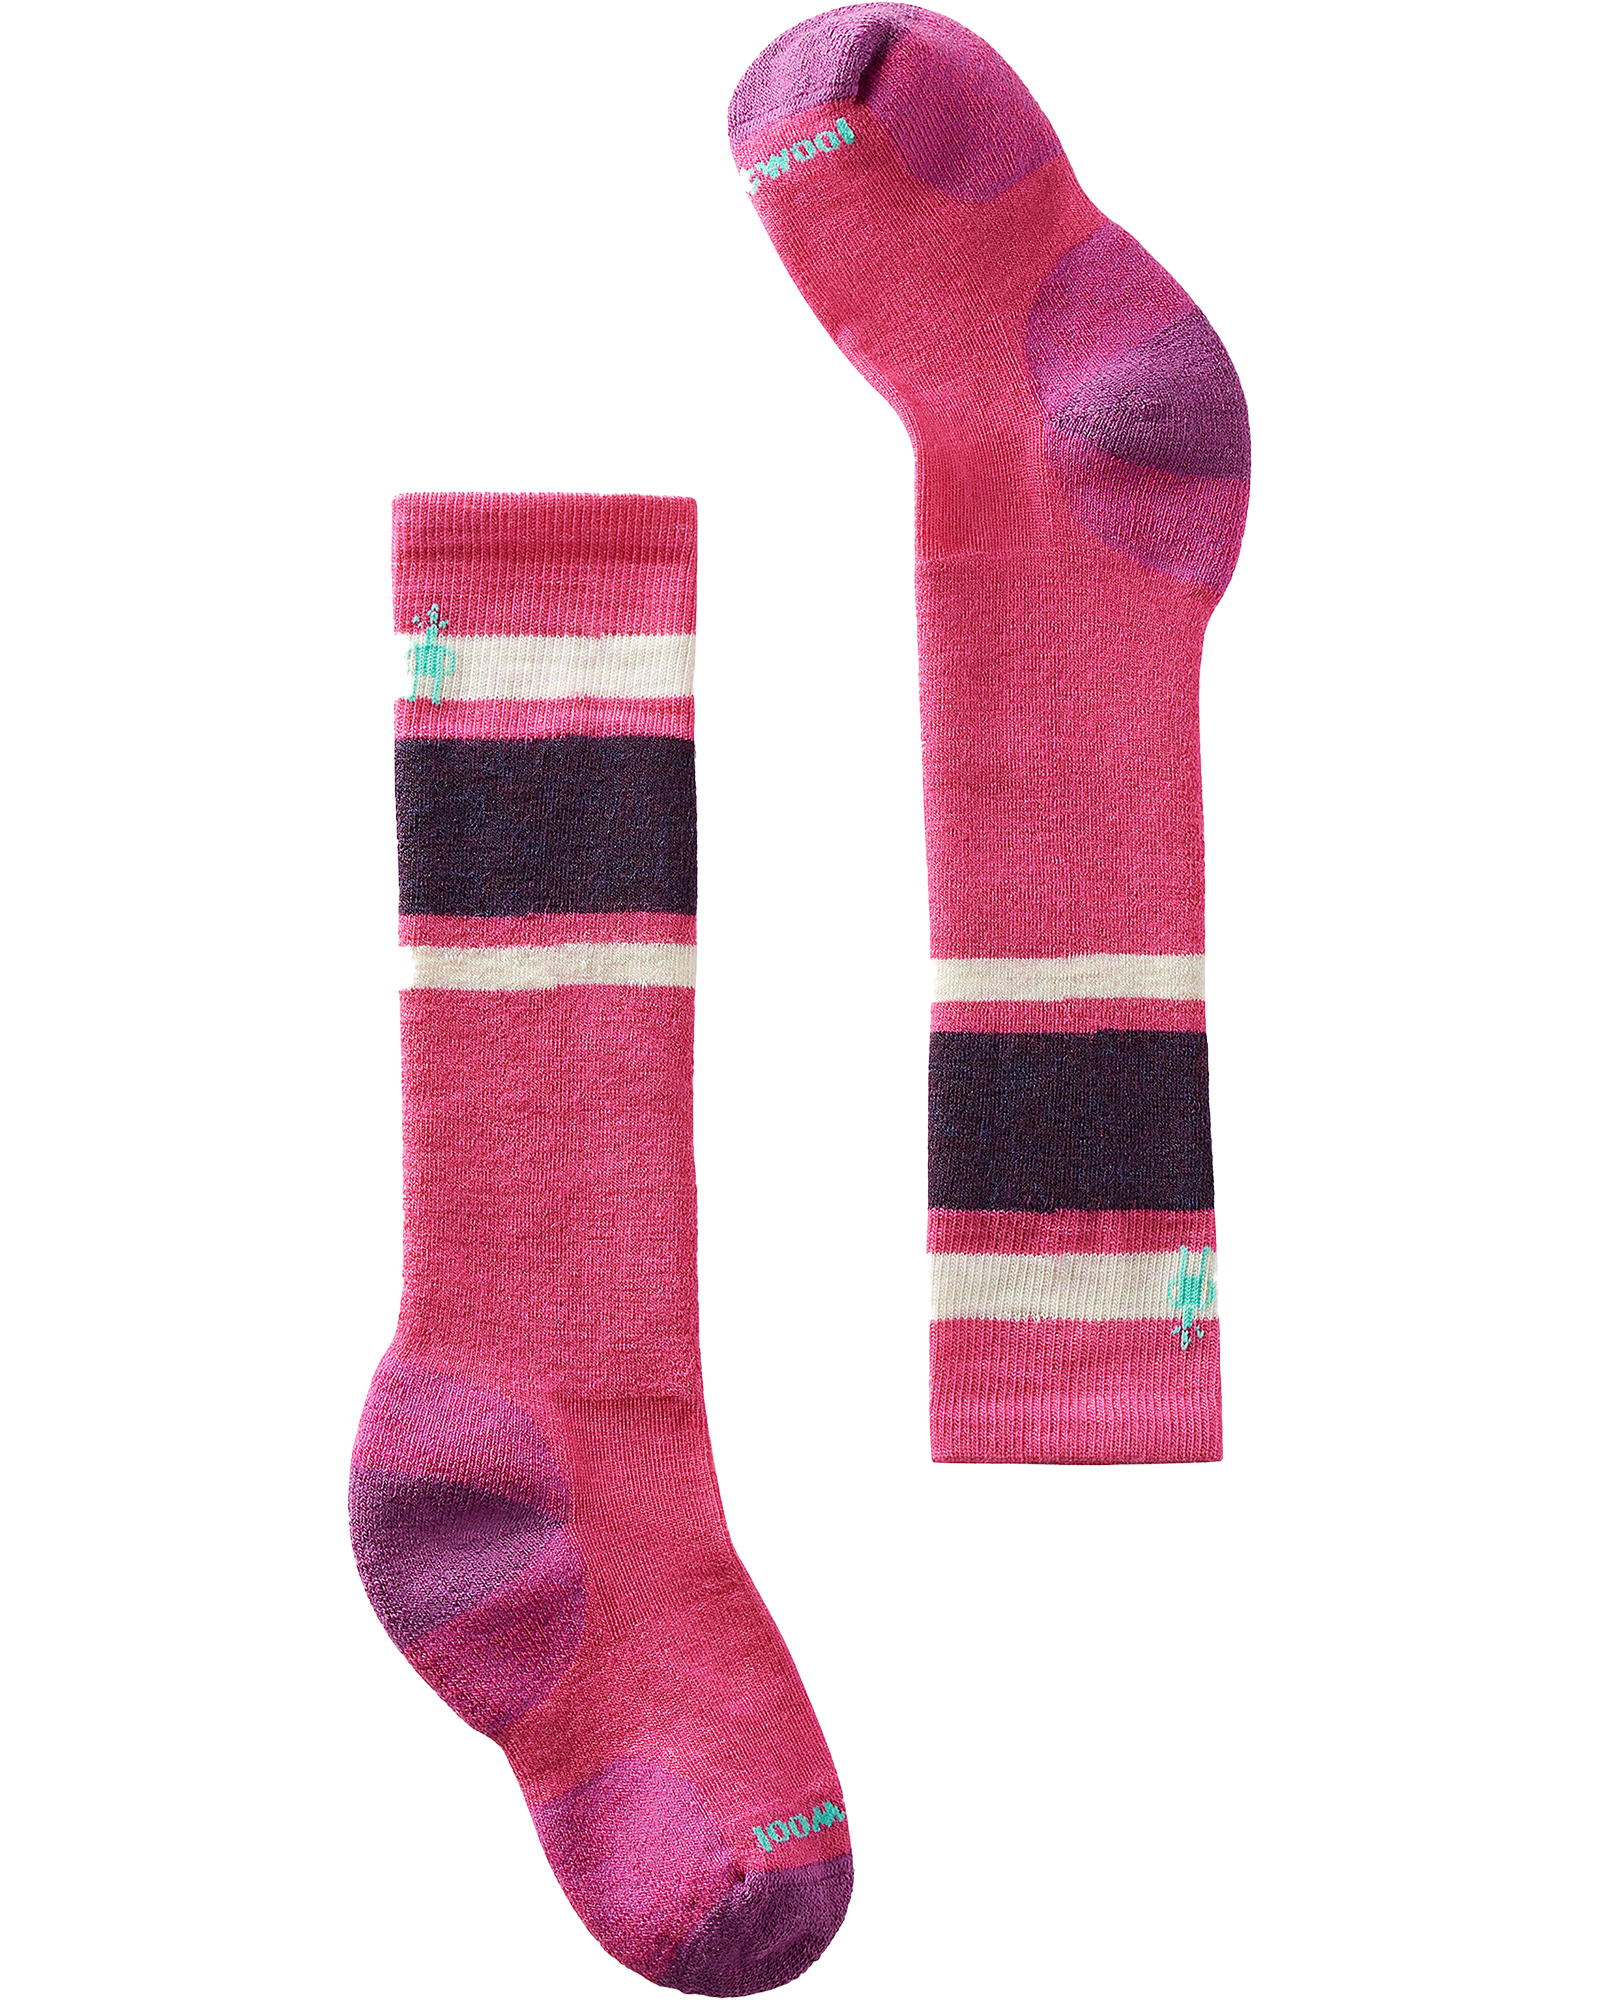 Smartwool Wintersport Full Cushion Kids’ Socks - Power Pink L